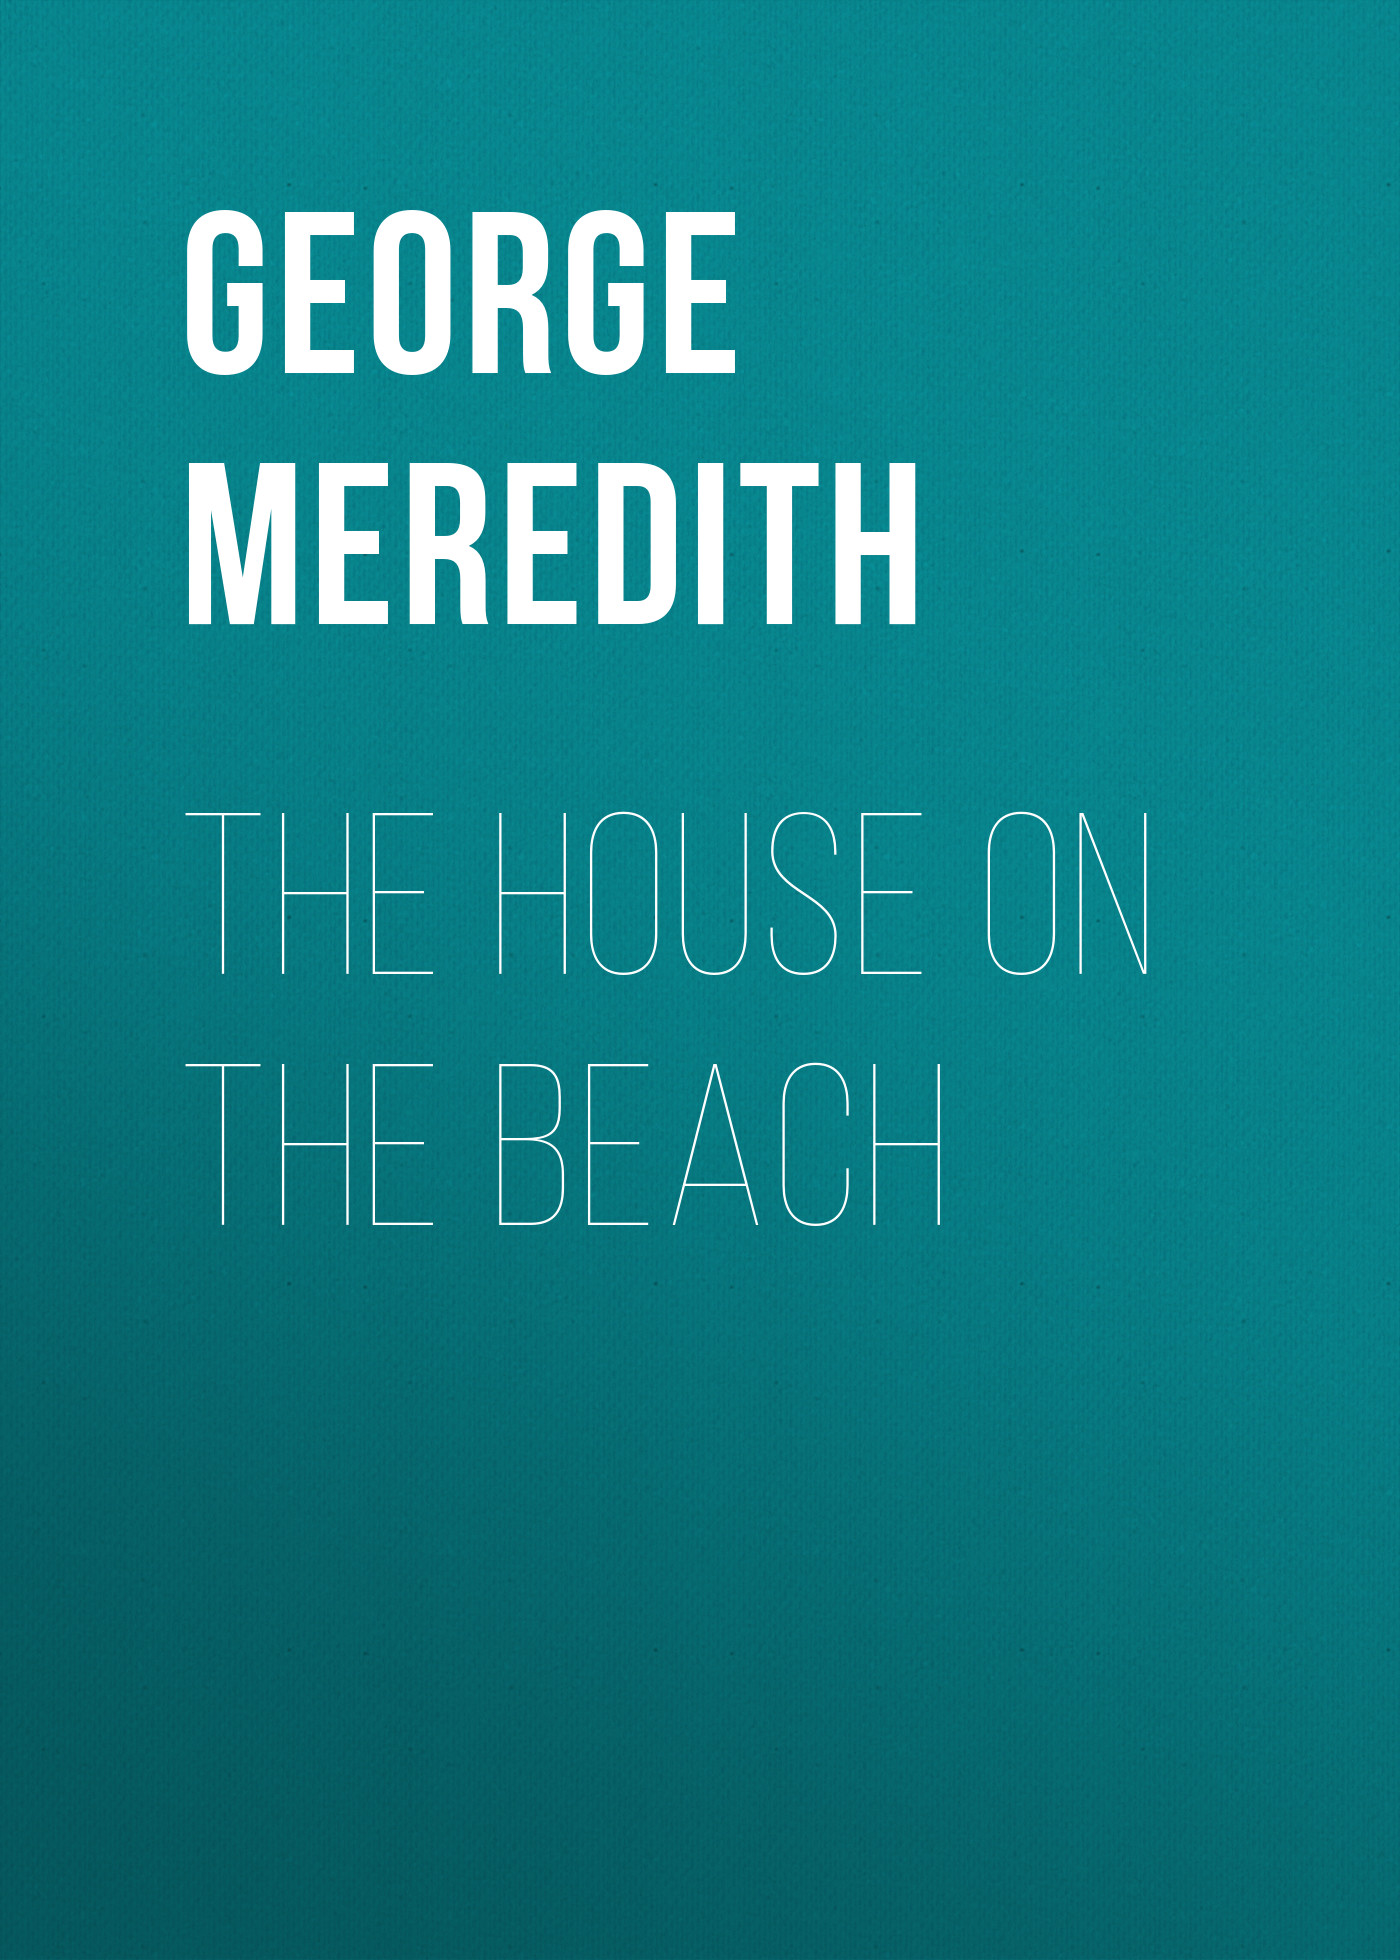 Книга The House on the Beach из серии , созданная George Meredith, может относится к жанру Зарубежная классика, Литература 19 века, Зарубежная старинная литература. Стоимость электронной книги The House on the Beach с идентификатором 36094349 составляет 0 руб.